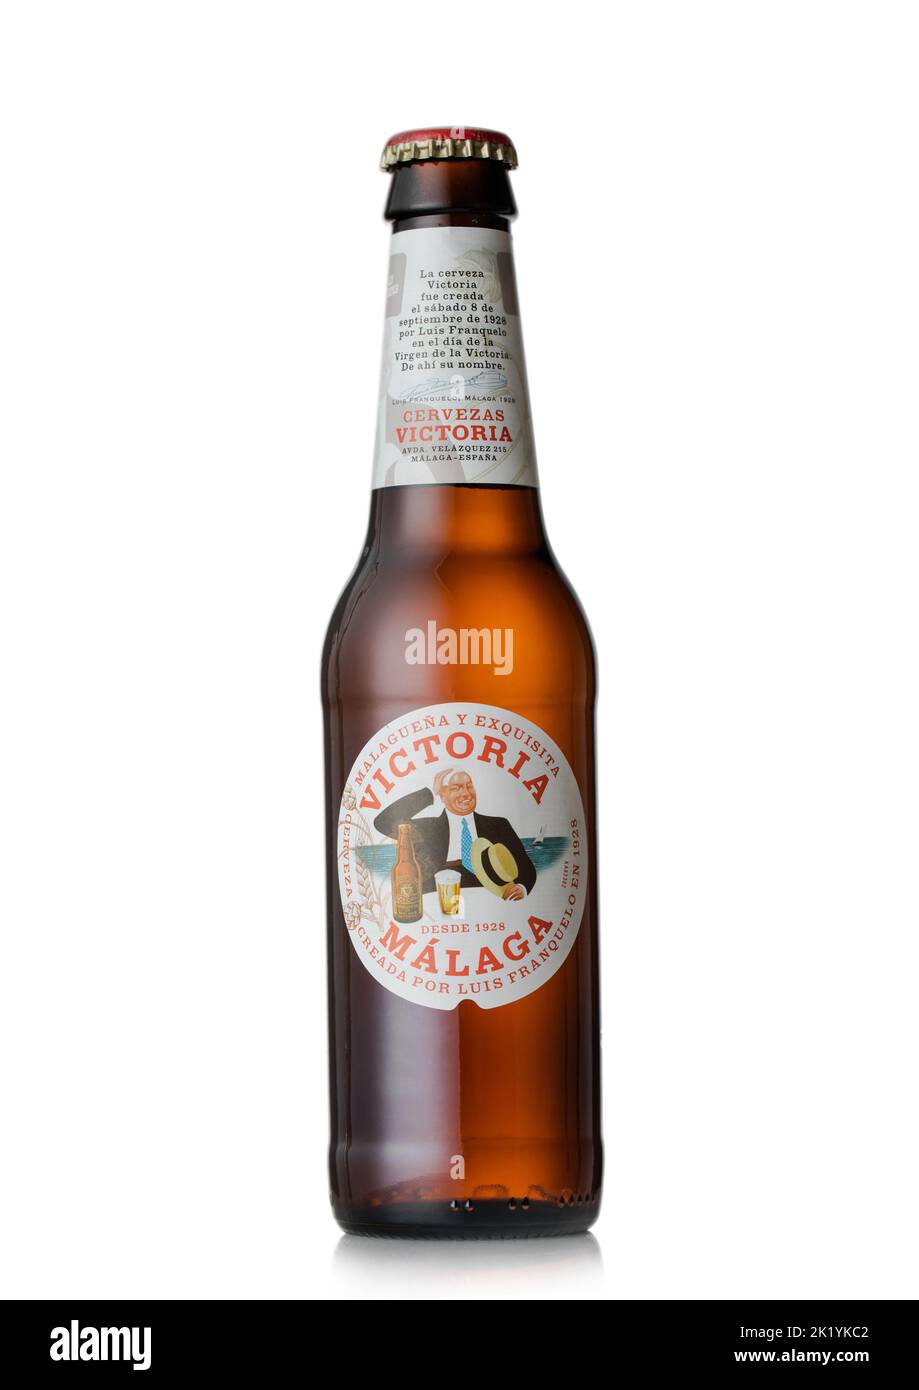 LONDON, Großbritannien - 10. AUGUST 2022: Flasche Victoria Malaga Lagerbier auf Weiß. Stockfoto